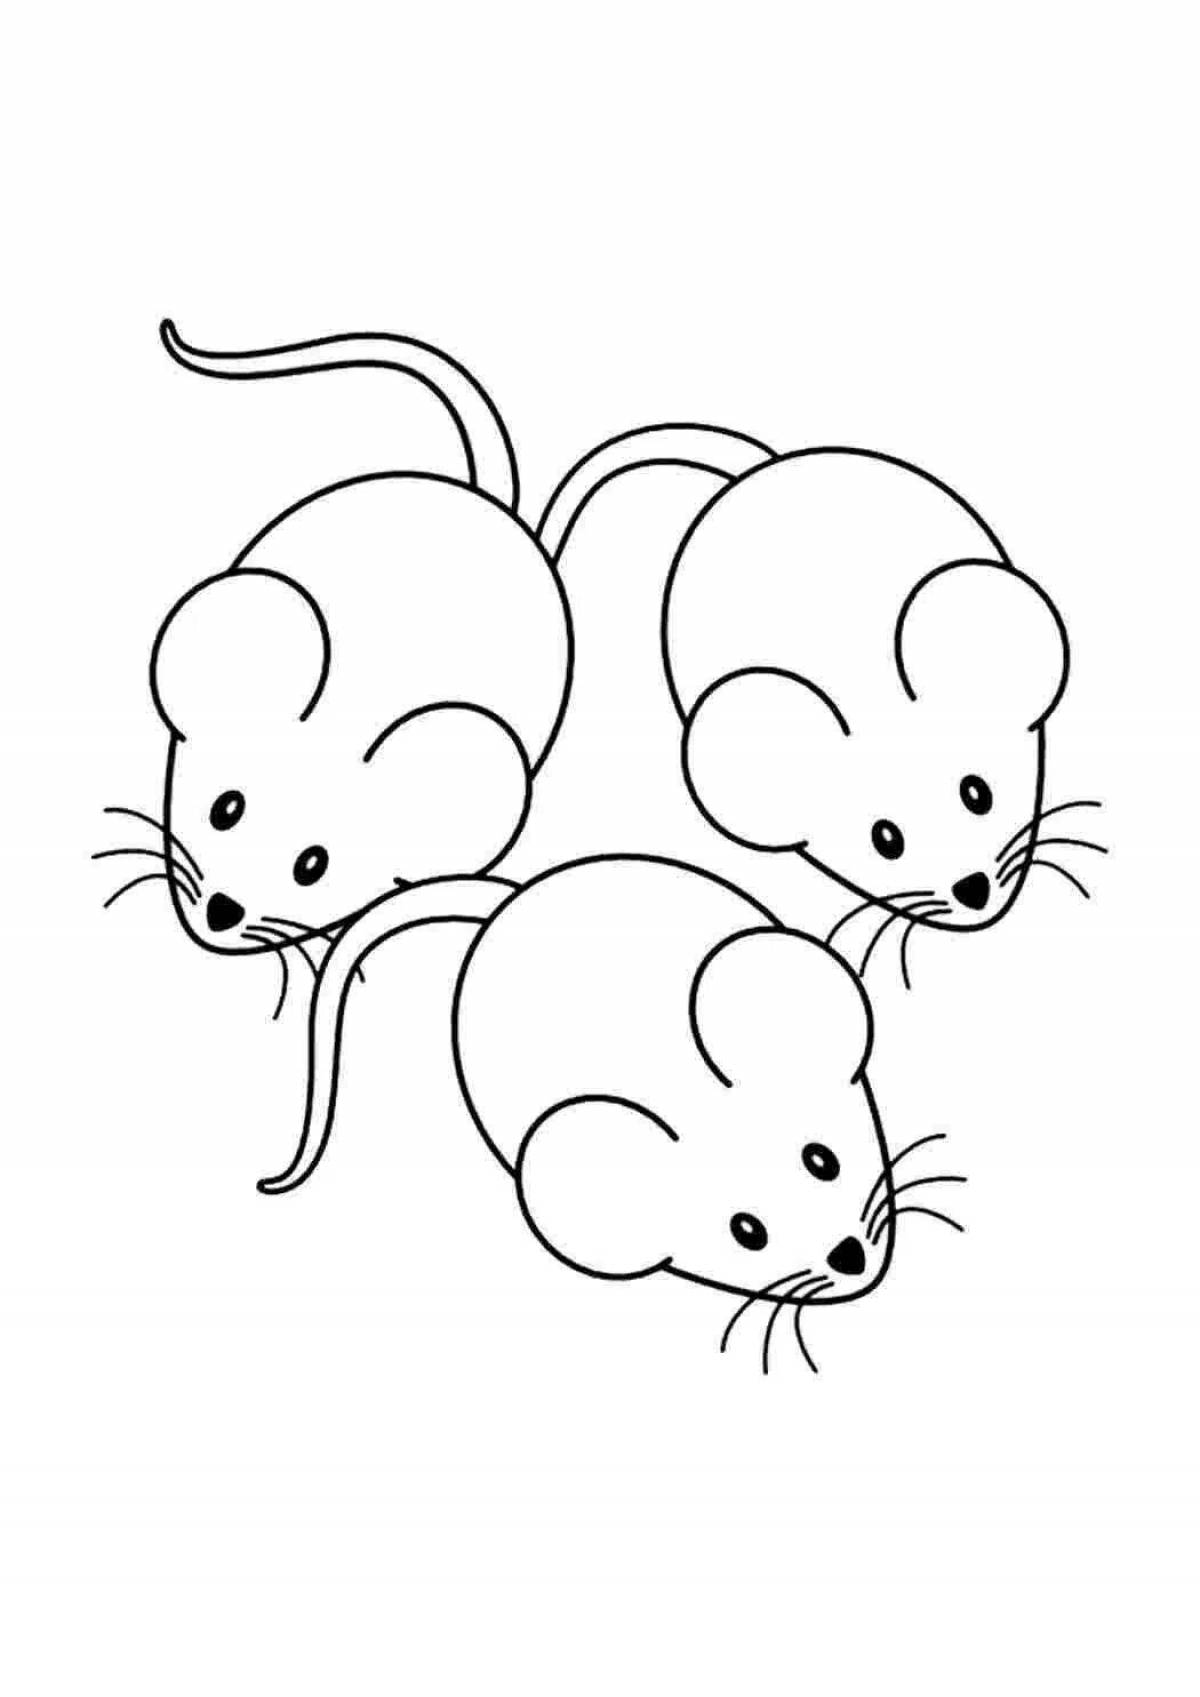 Творческая раскраска мышь для детей 3-4 лет